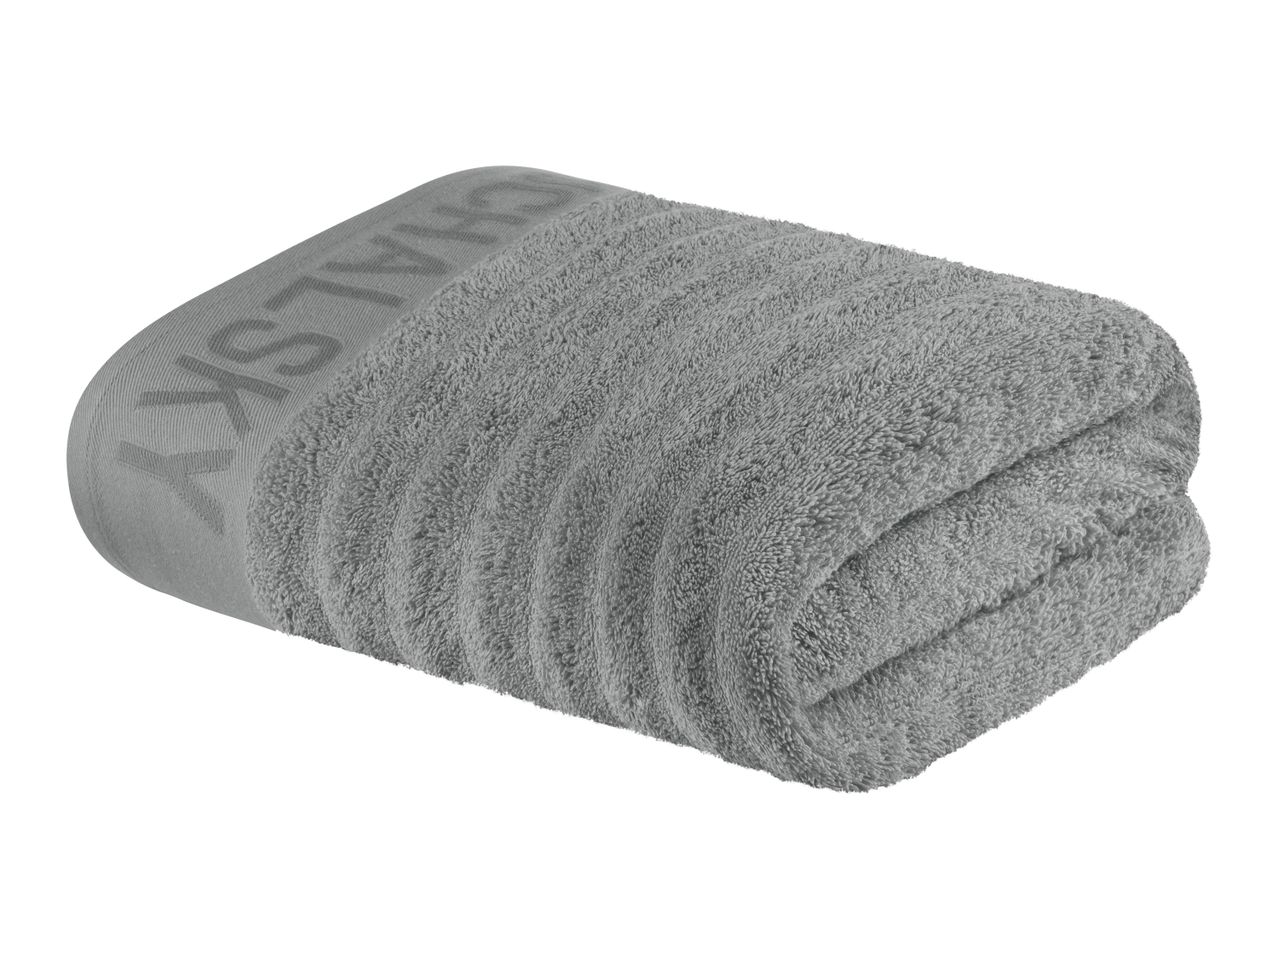 Asciugamano , prezzo 12.99 EUR  
Asciugamano  70 x 140 cm  
-  Puro cotone